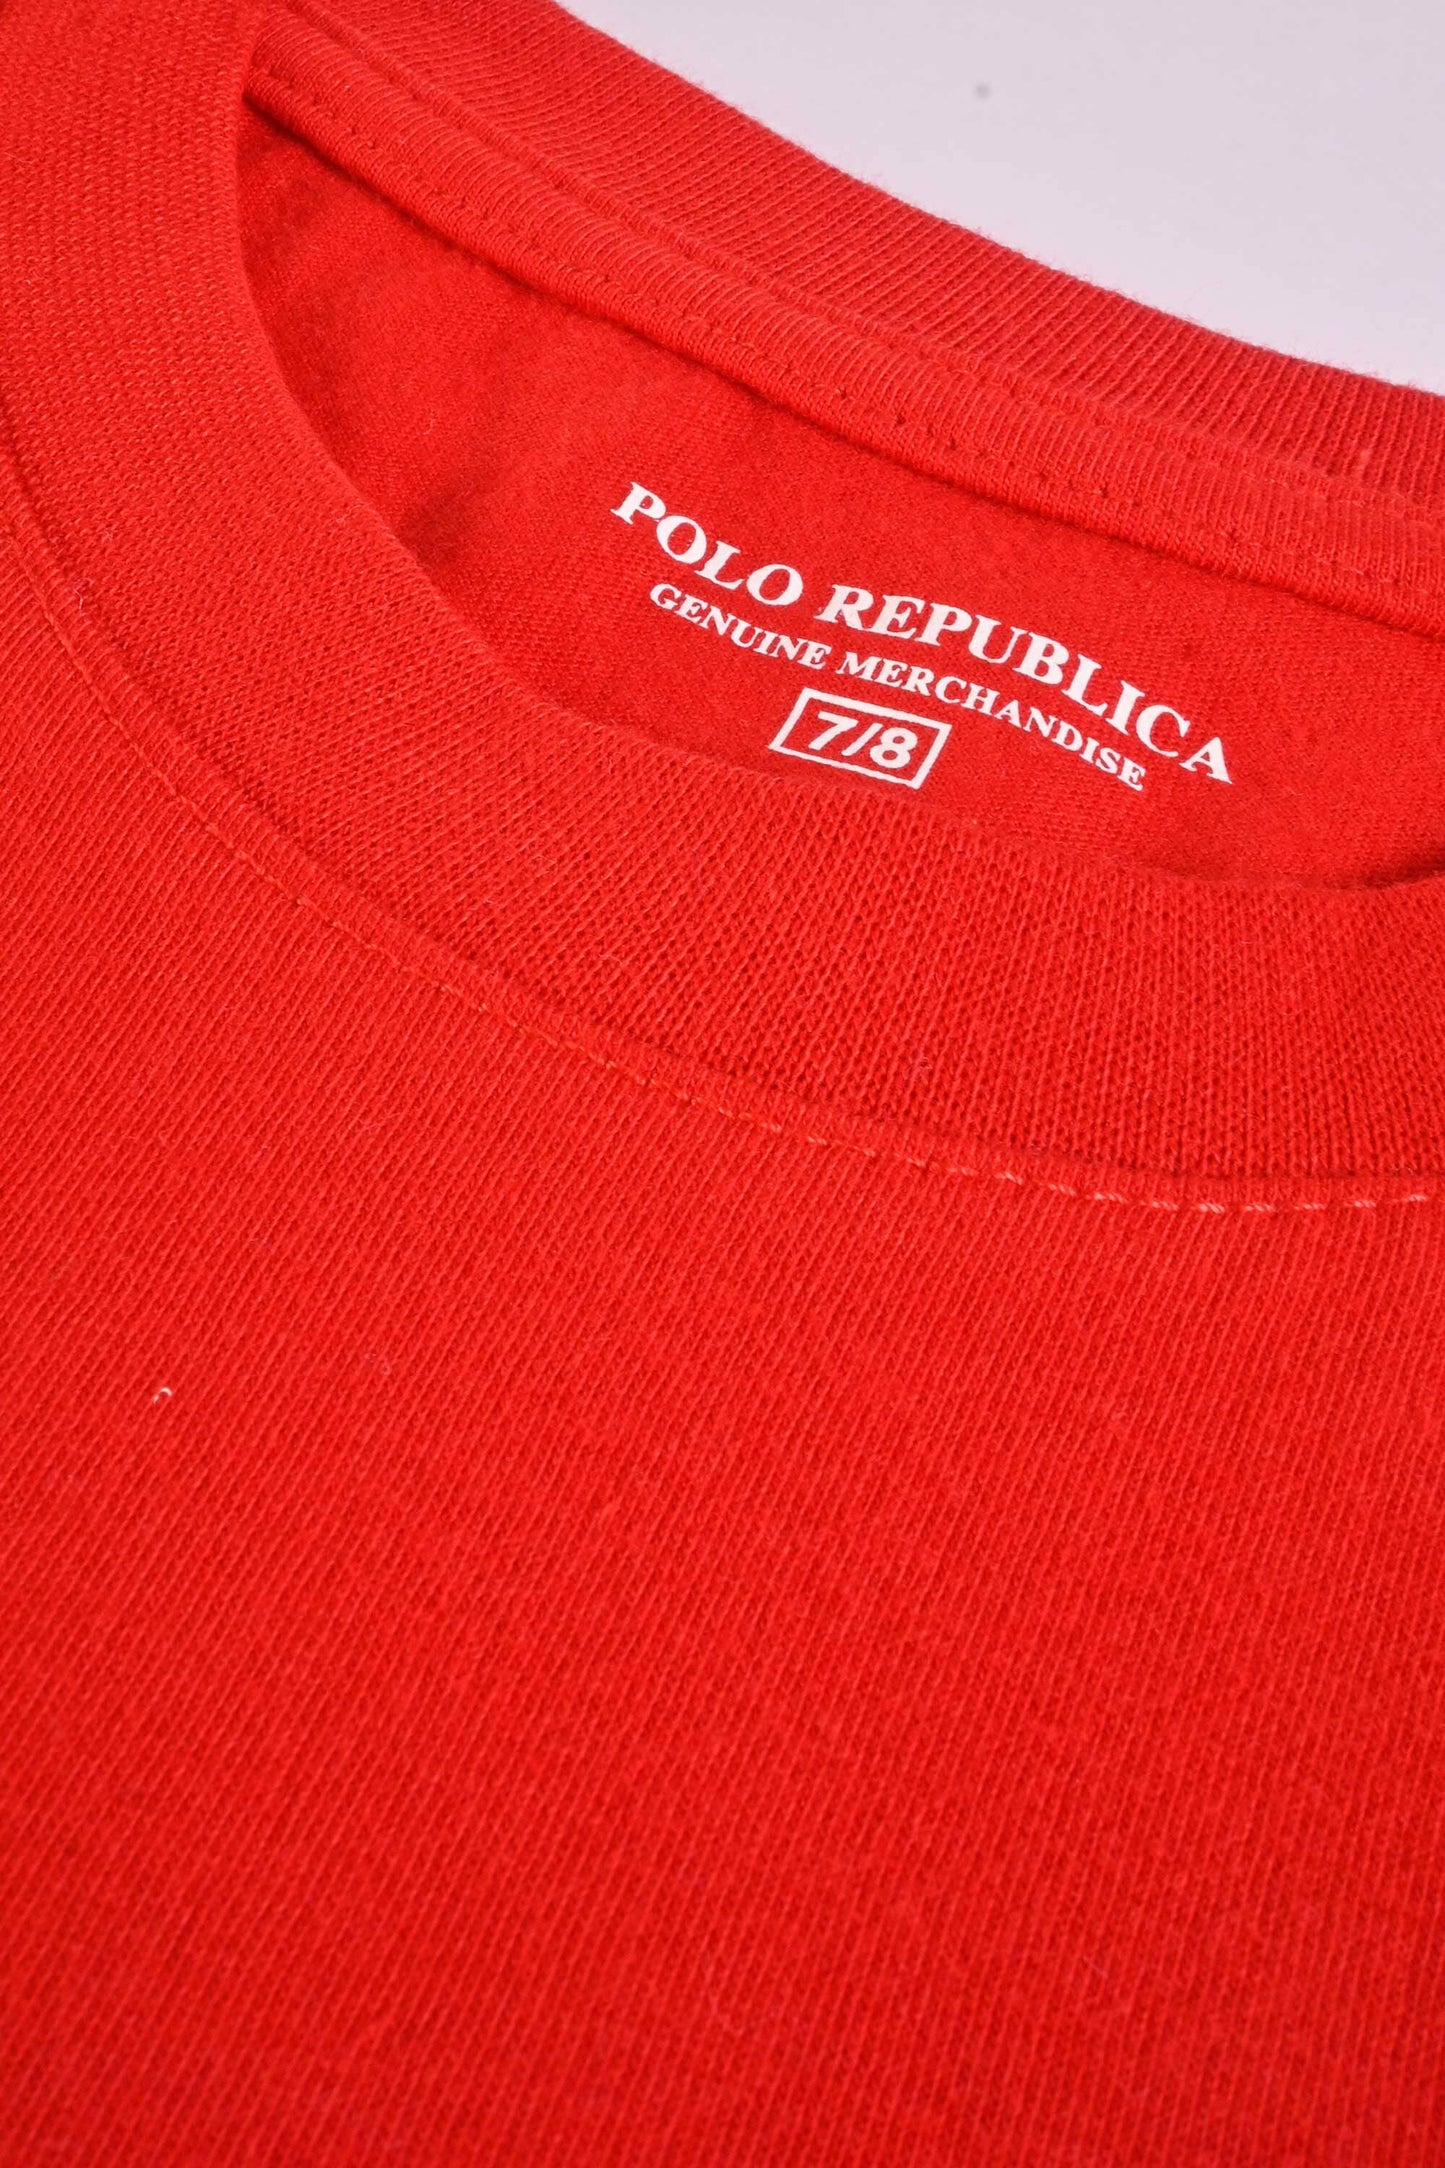 Polo Republica Boy's Piston Cup Printed Tee Shirt Boy's Tee Shirt Polo Republica 